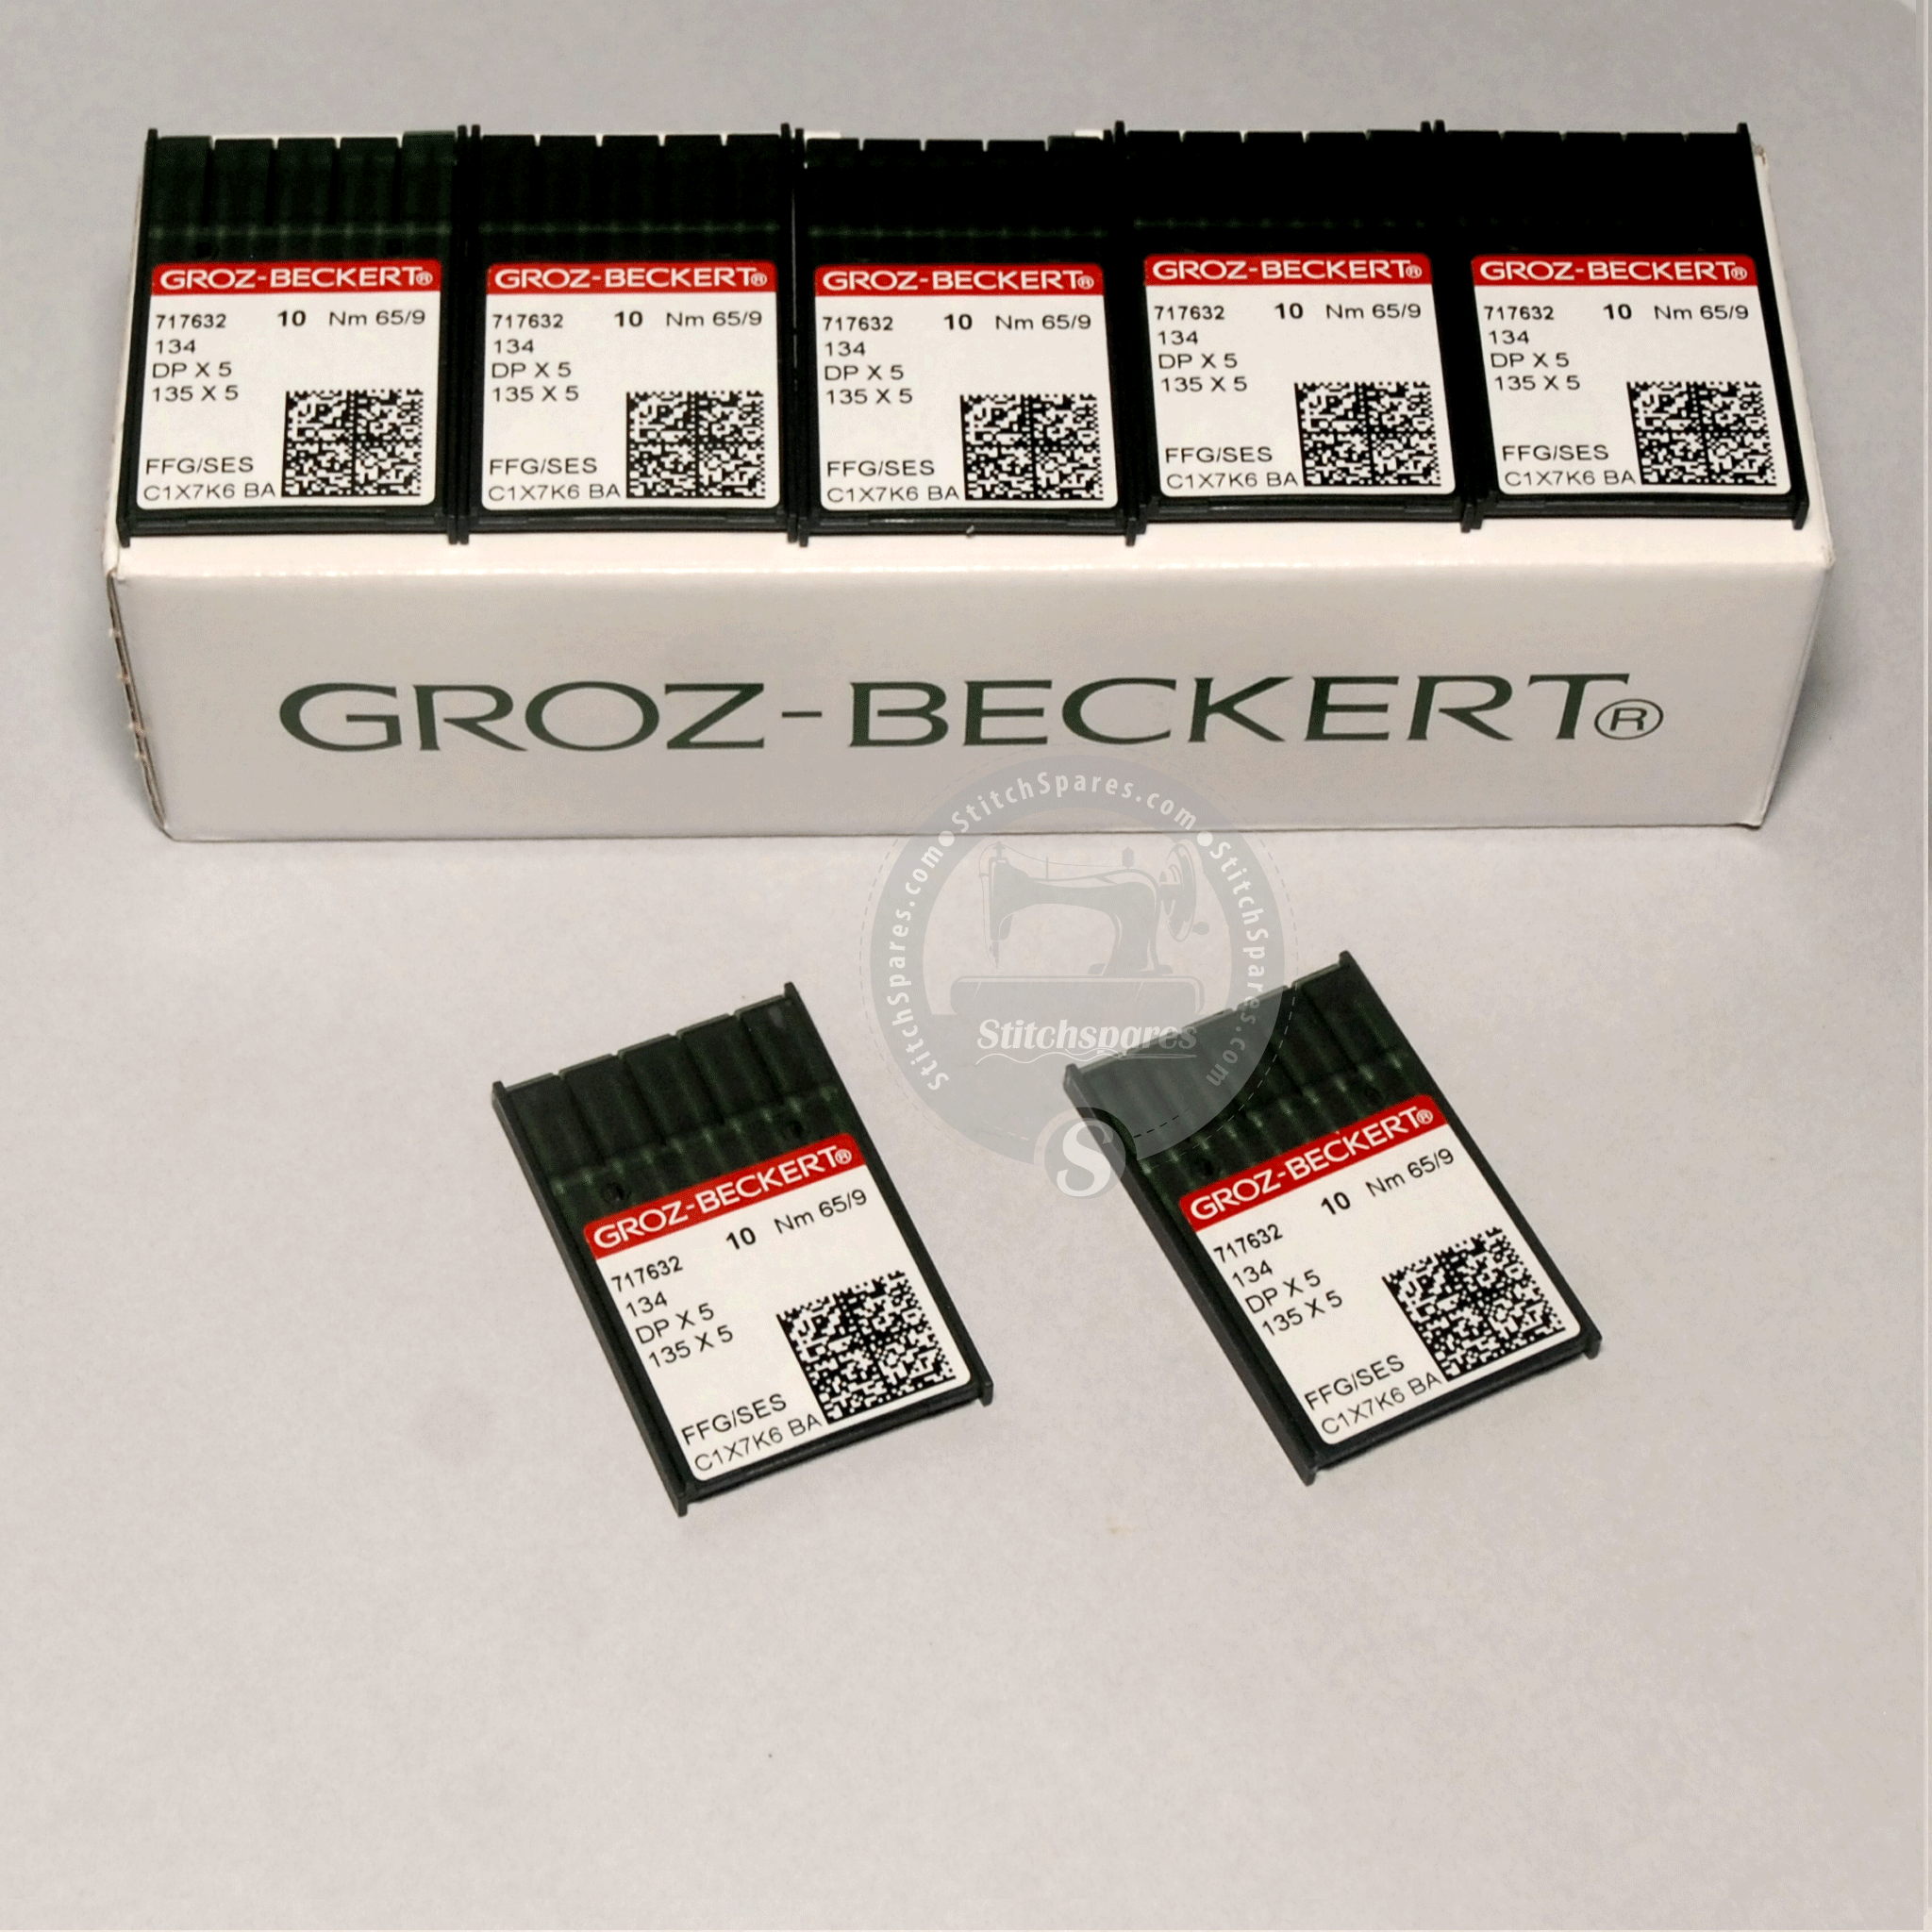 DPX5 659 134 135X5 FFG SES Groz Beckert सुई बटन होल सिलाई मशीन के लिए